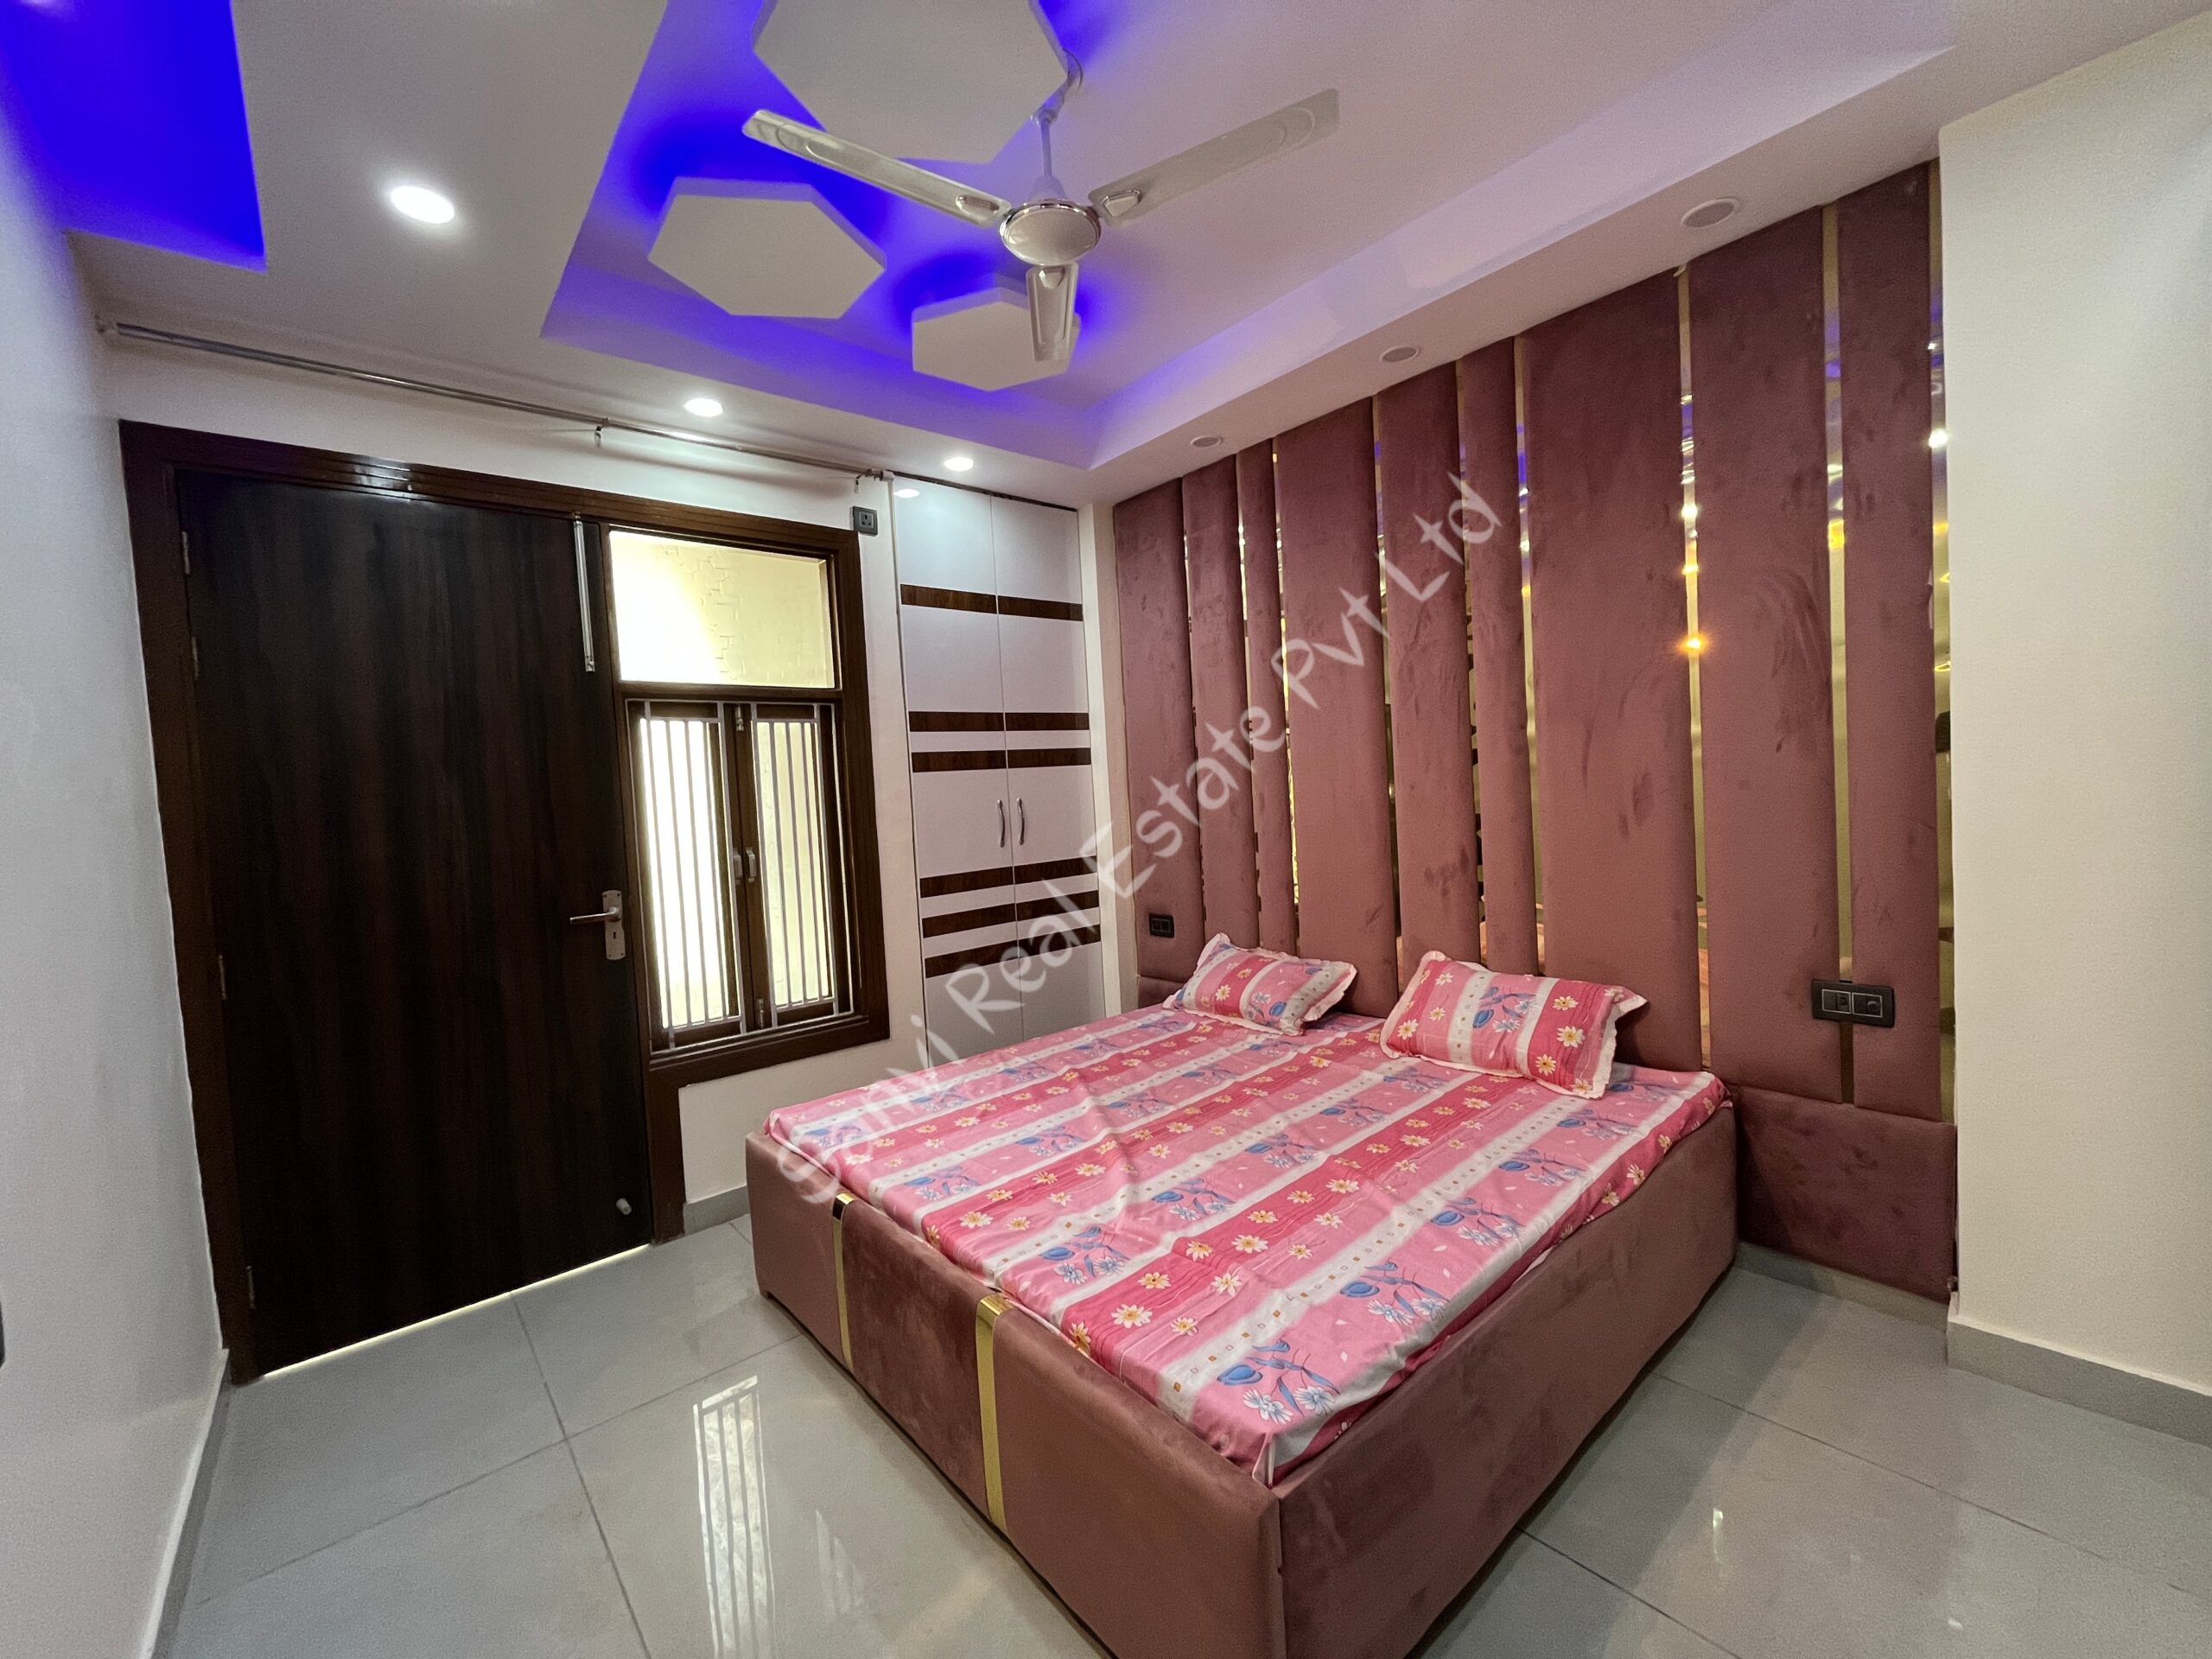 4 BHK Flat in Dwarka Mor | Fully Furnished Flat | Sanvi Real Estate